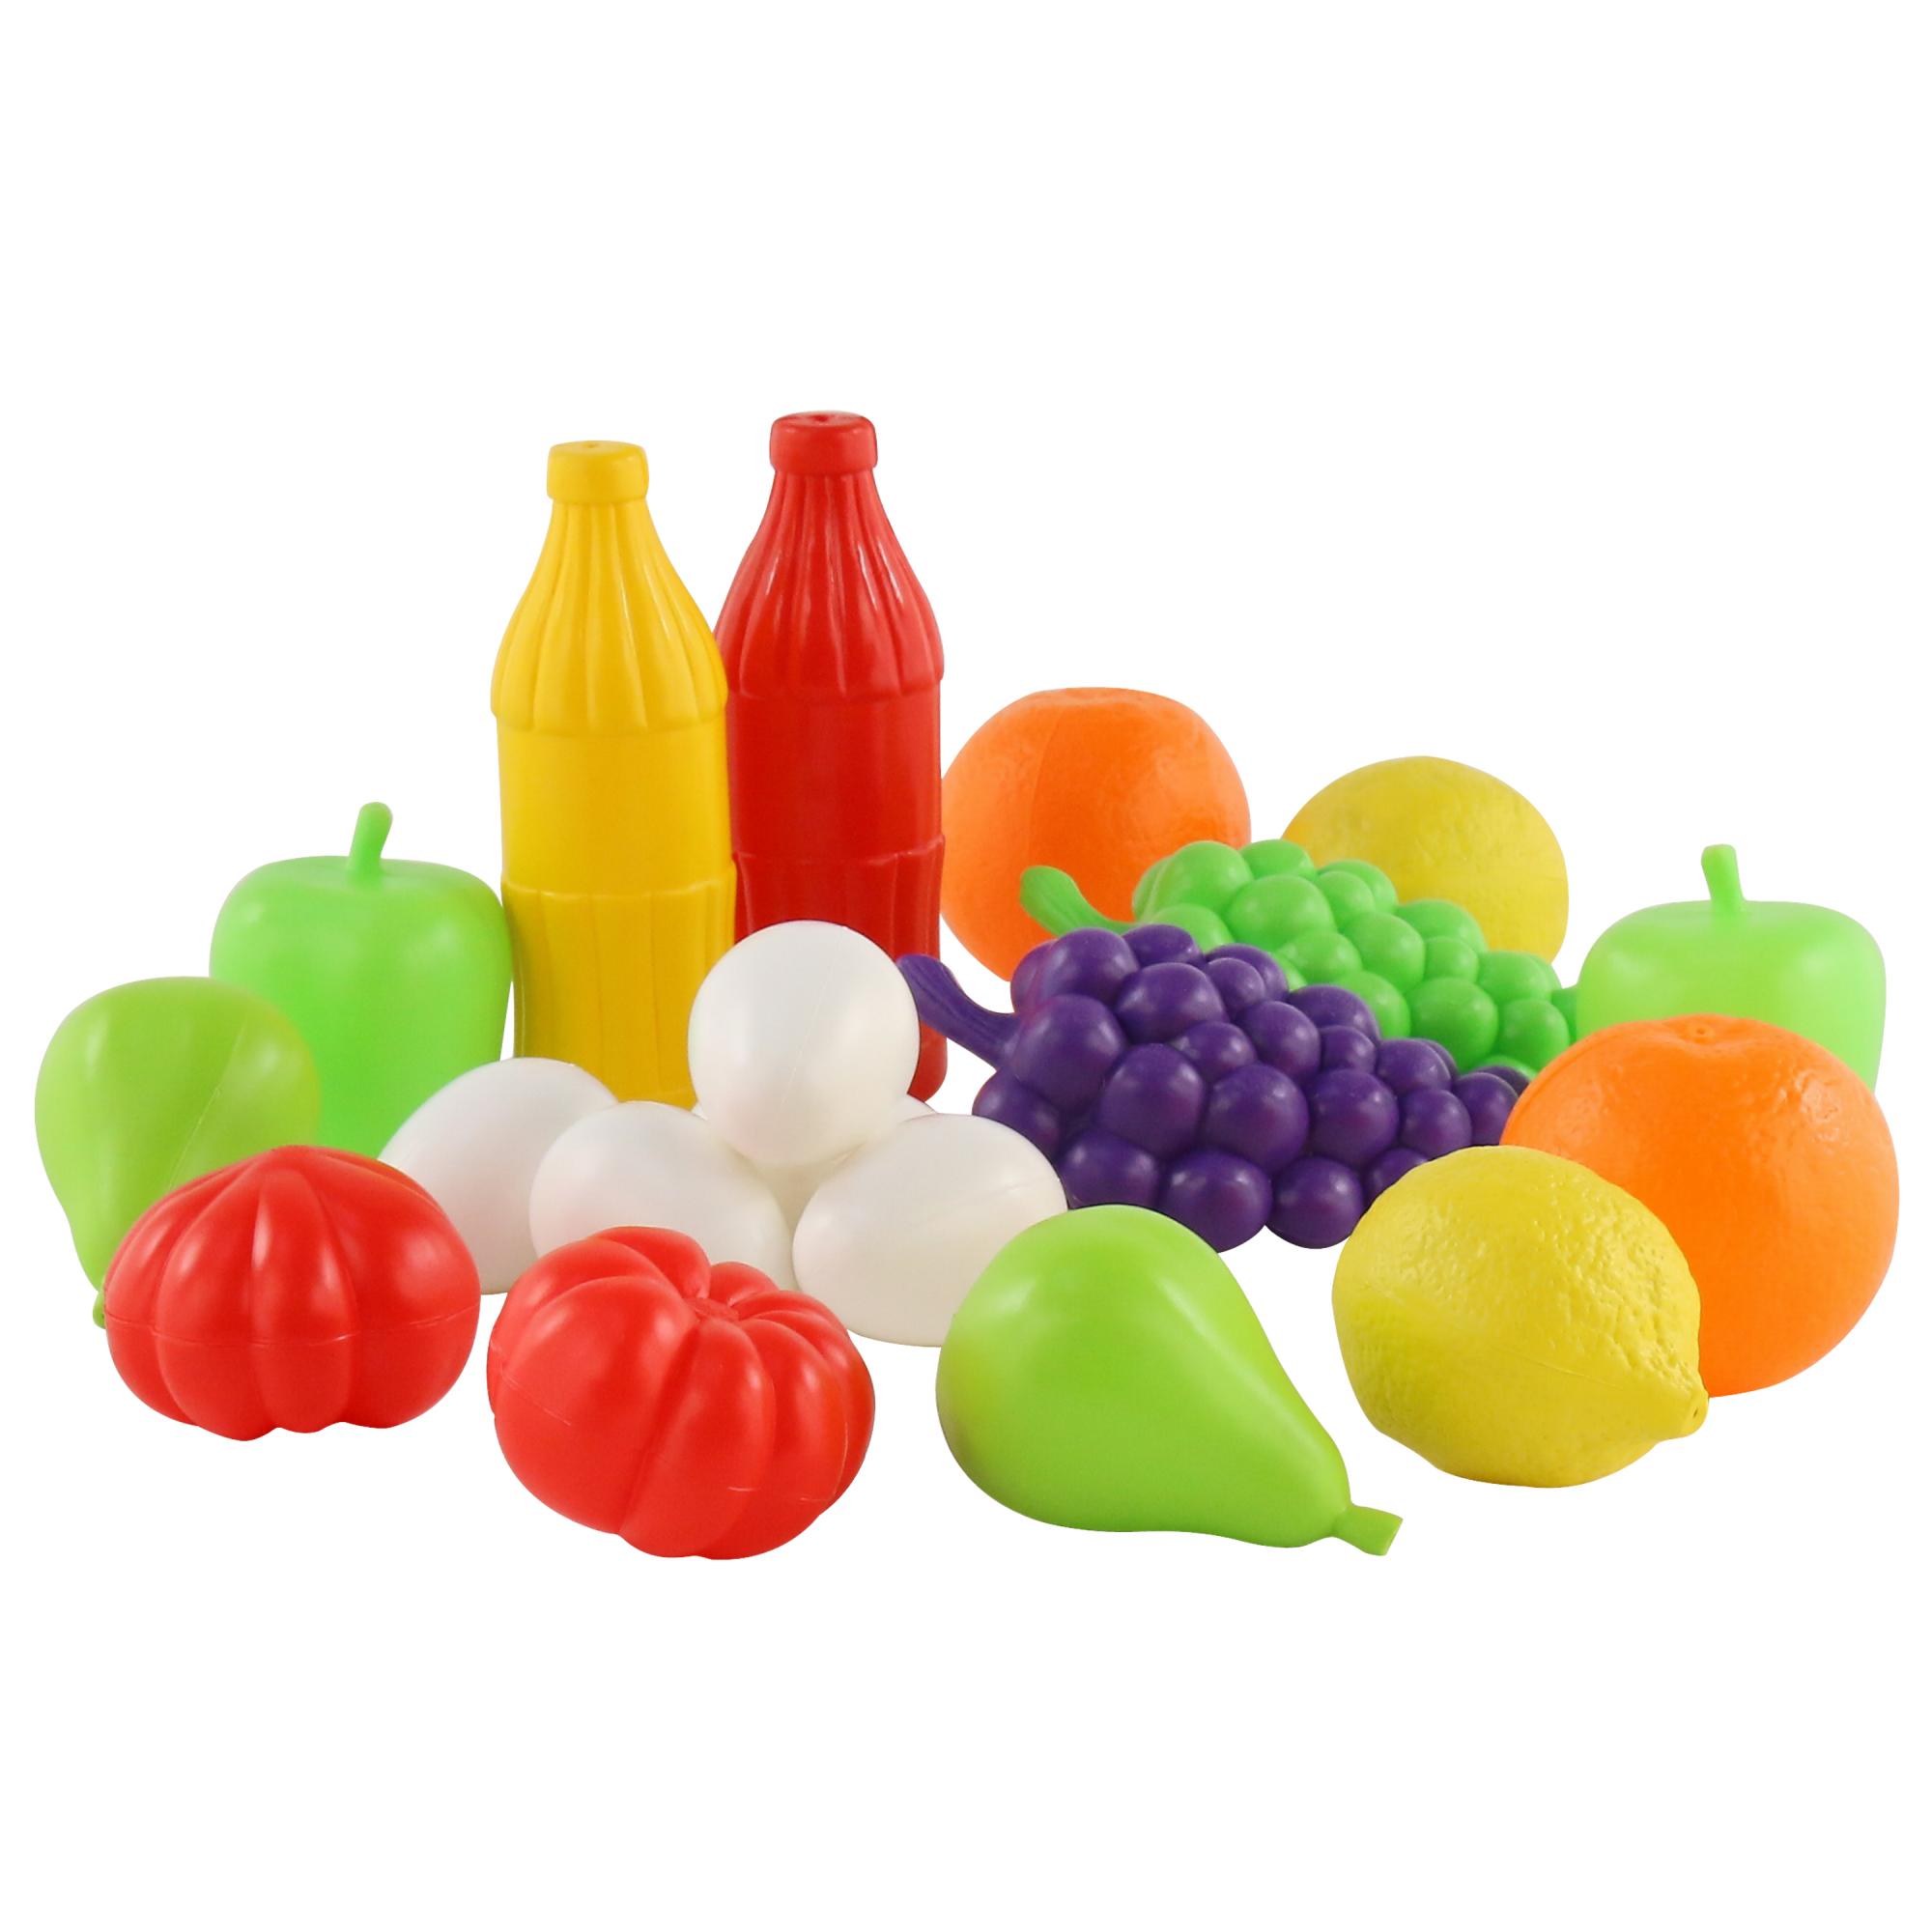 Набор product. Игрушка/набор продуктов №3 (6 элементов) (в сеточке) (46987). Полесье набор продуктов. Пластиковые игрушки. Игрушки из пластмассы.